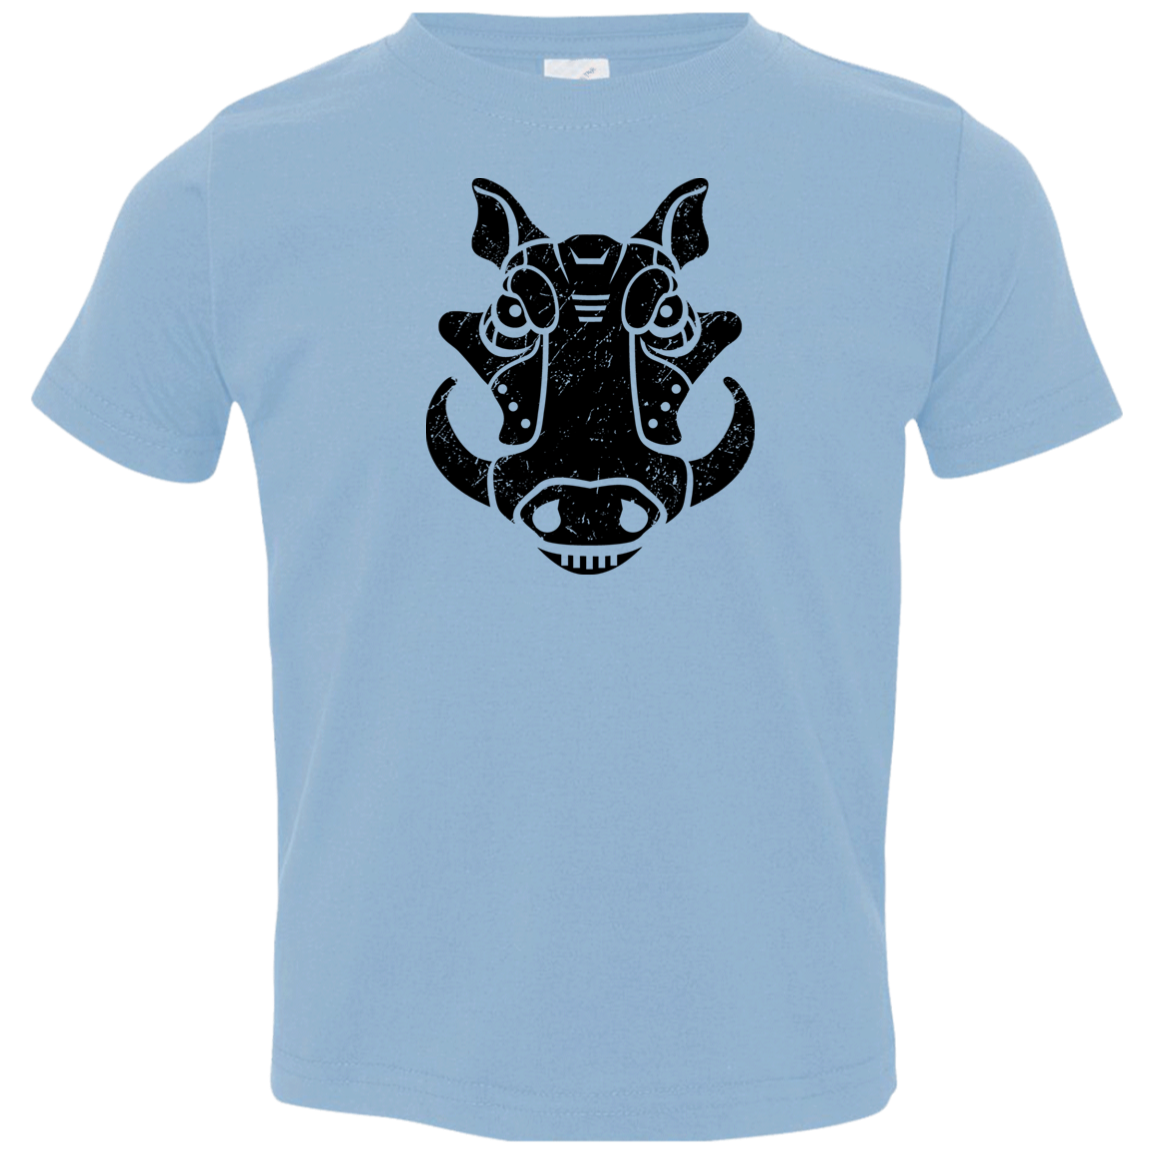 Black Distressed Emblem T-Shirt for Toddlers (Warthog/Bumper)